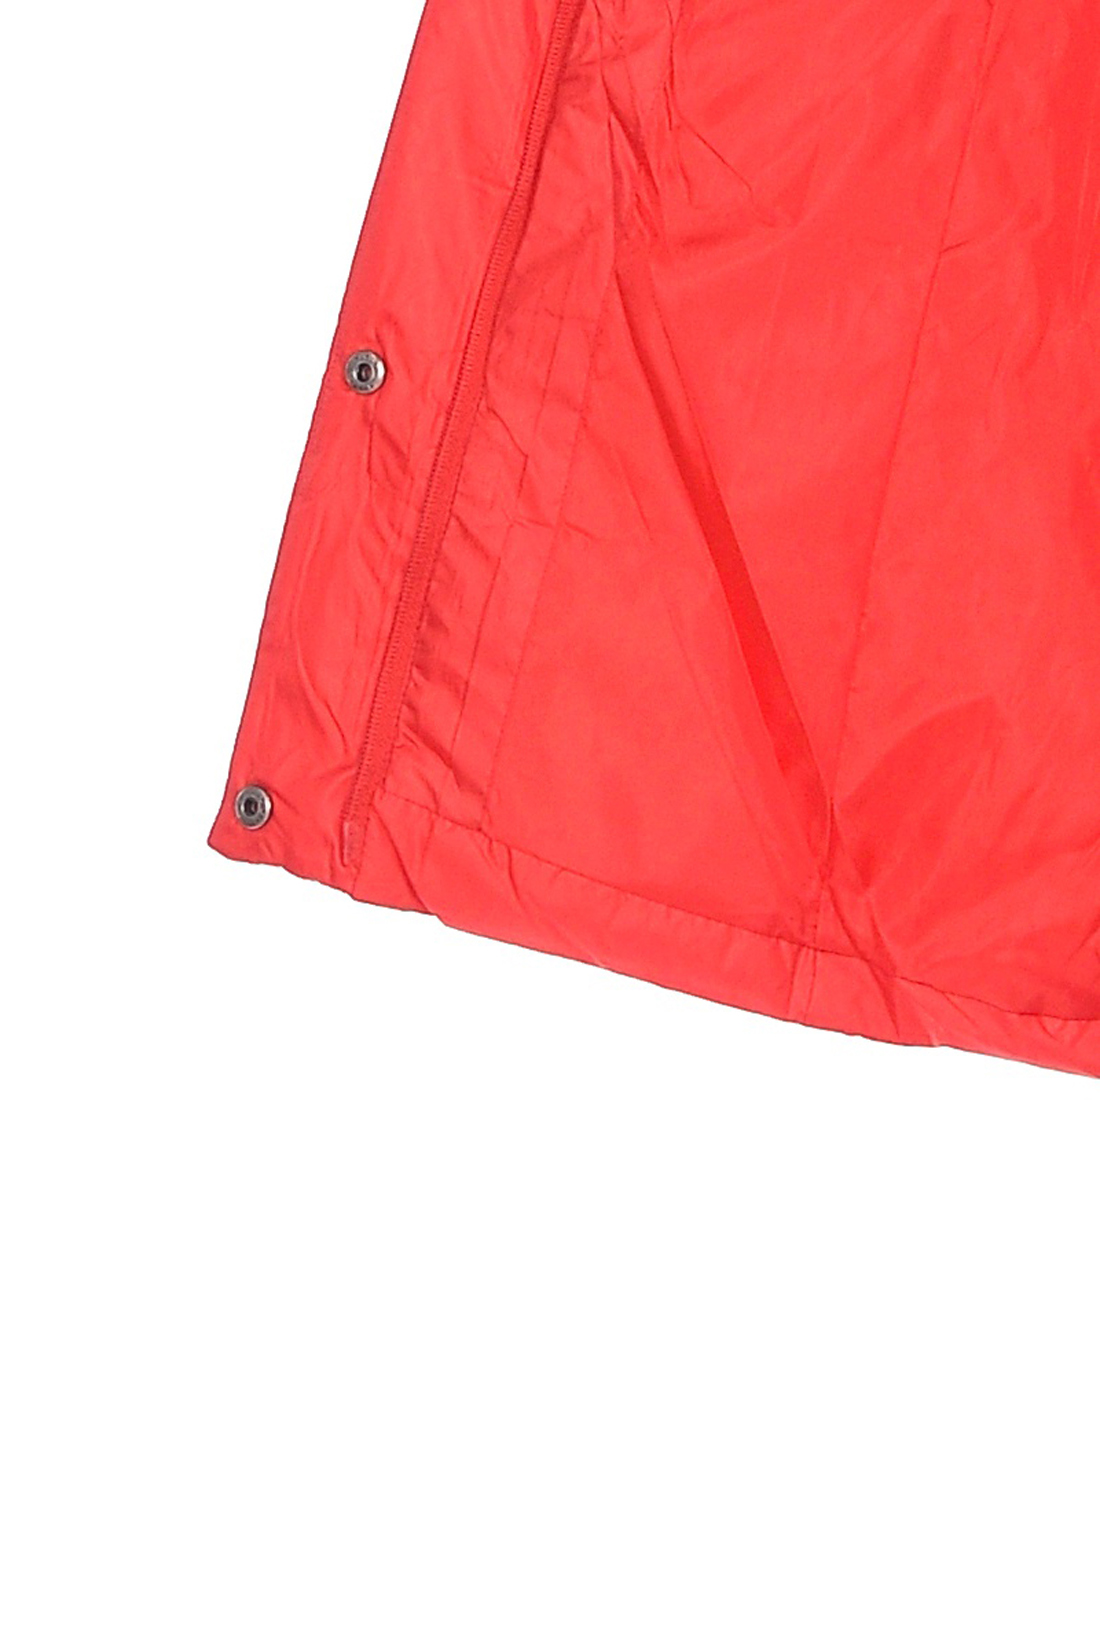 Полуприталенный пуховик с кожаными ремешками (арт. baon B008569), размер M, цвет красный Полуприталенный пуховик с кожаными ремешками (арт. baon B008569) - фото 4